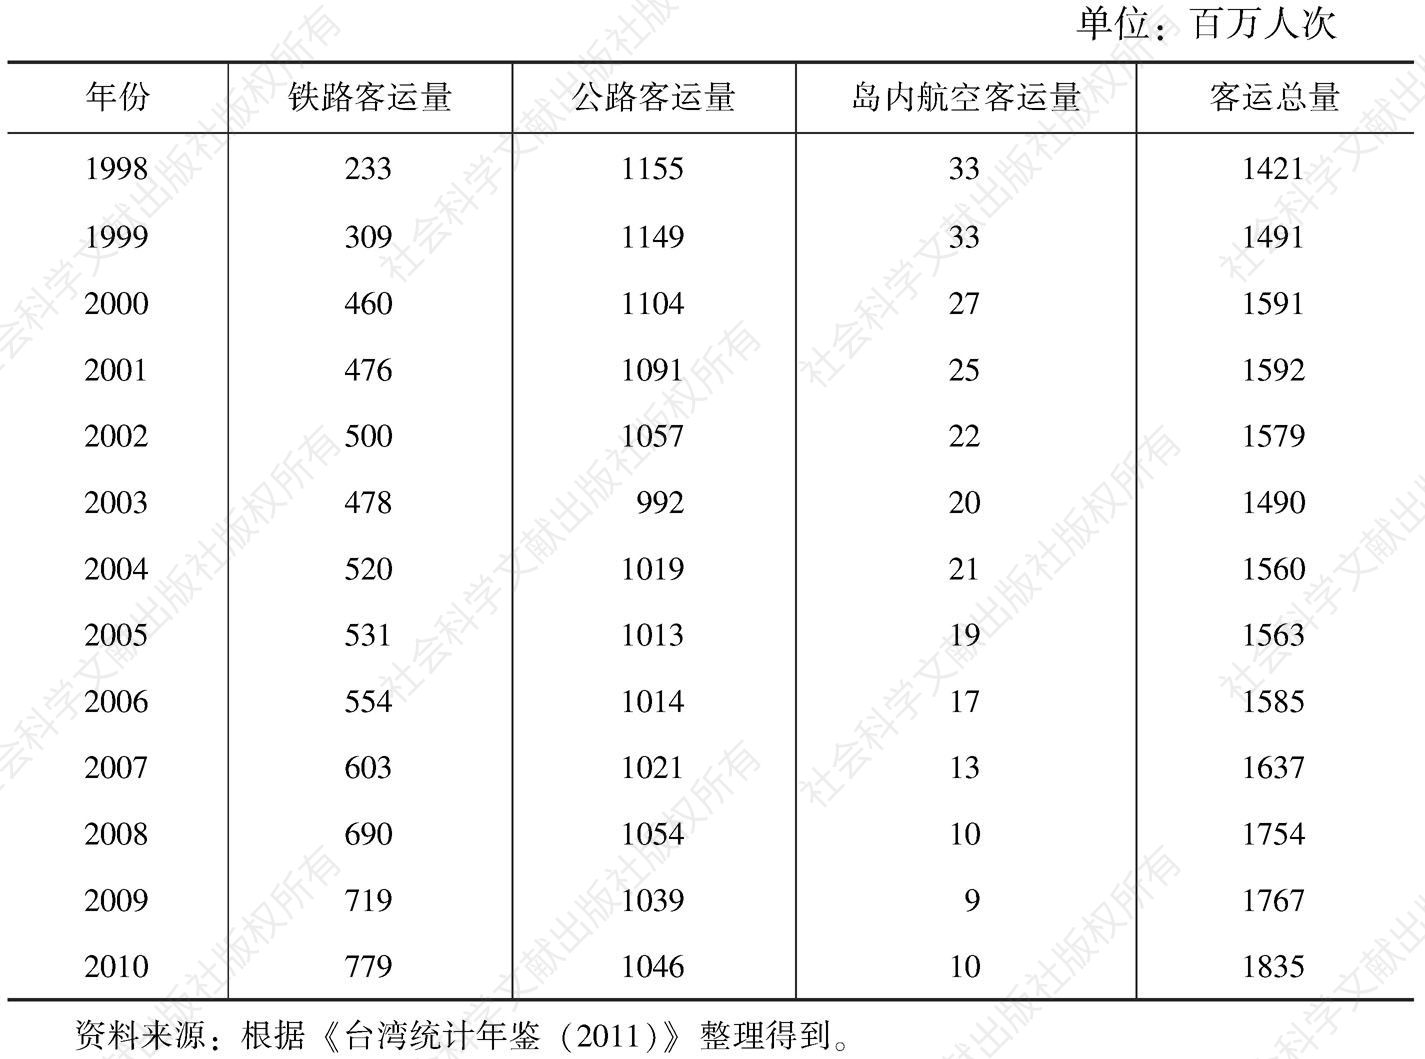 表5-9 中国台湾地区各种交通方式客运量